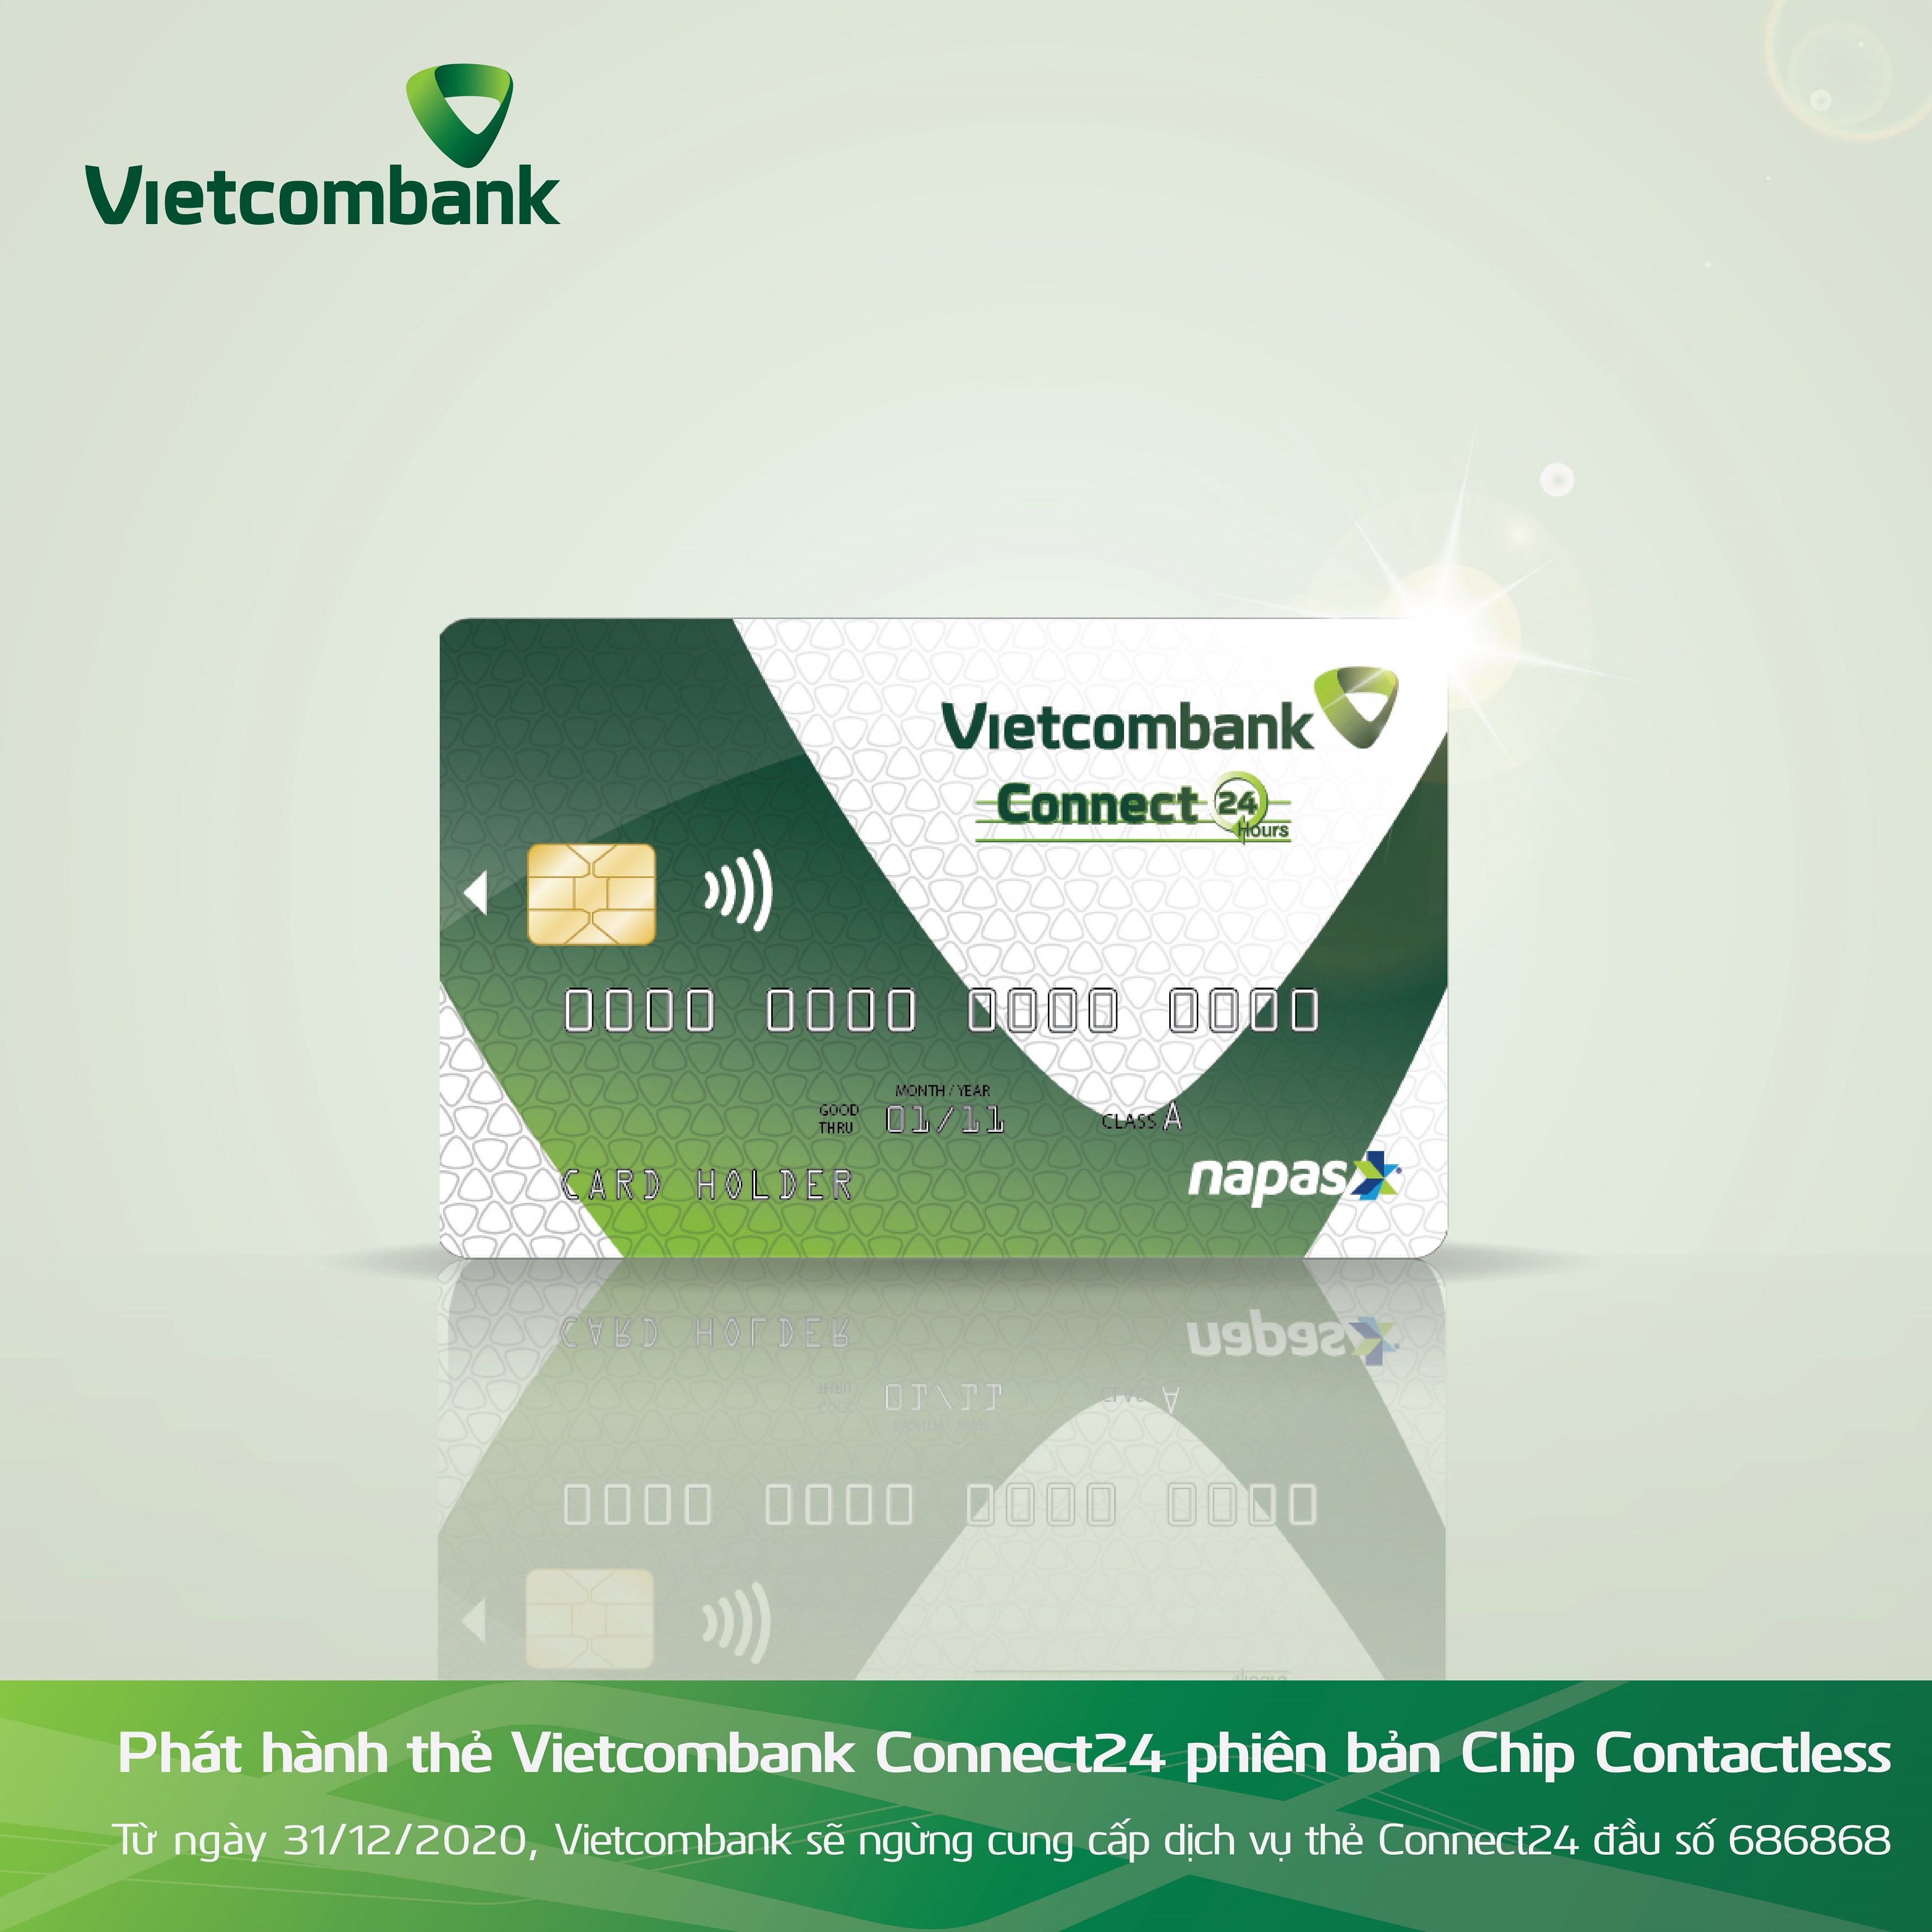 Vietcombank Cộng sản: Vietcombank luôn là một ngân hàng lớn của Việt Nam và đã có mặt trong nhiều năm qua. Được thành lập từ năm 1963, ngân hàng này liên tục cải tiến và phát triển sản phẩm và dịch vụ để phục vụ khách hàng tốt hơn. Hãy xem hình ảnh liên quan đến từ khóa này để biết thêm chi tiết về Vietcombank.